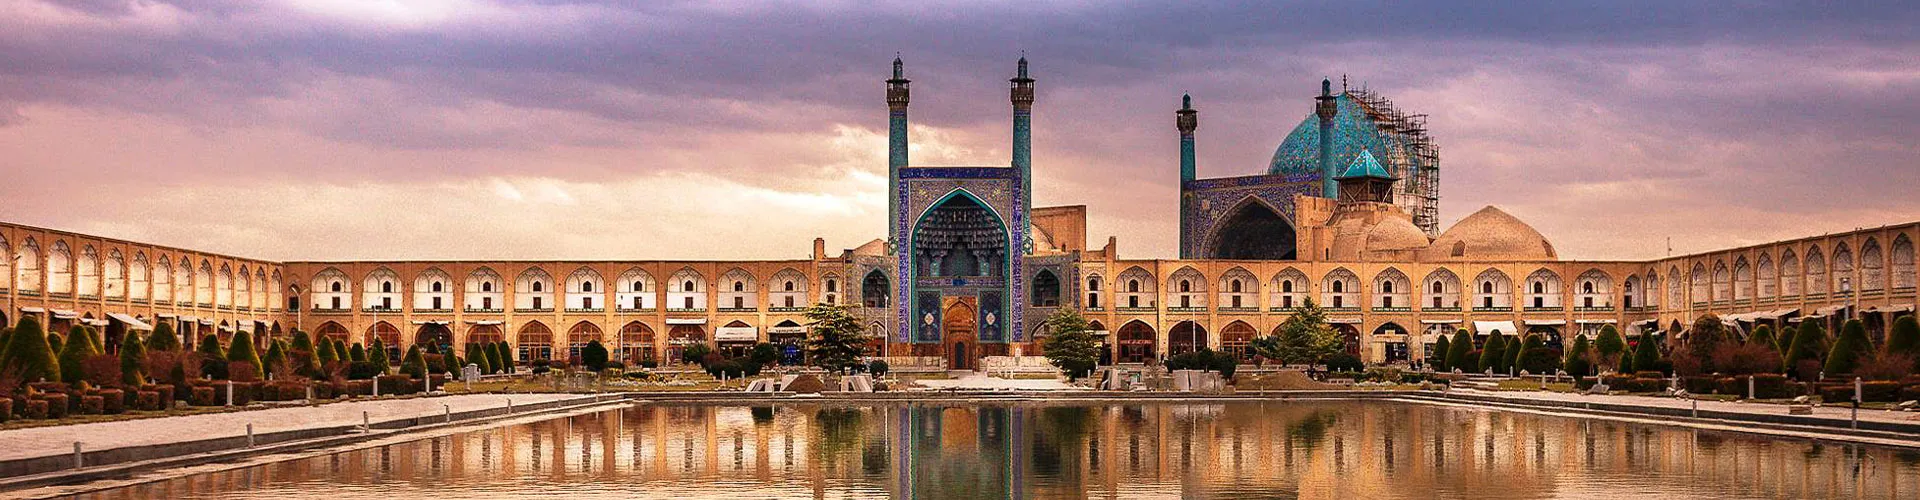 تور هوایی اصفهان